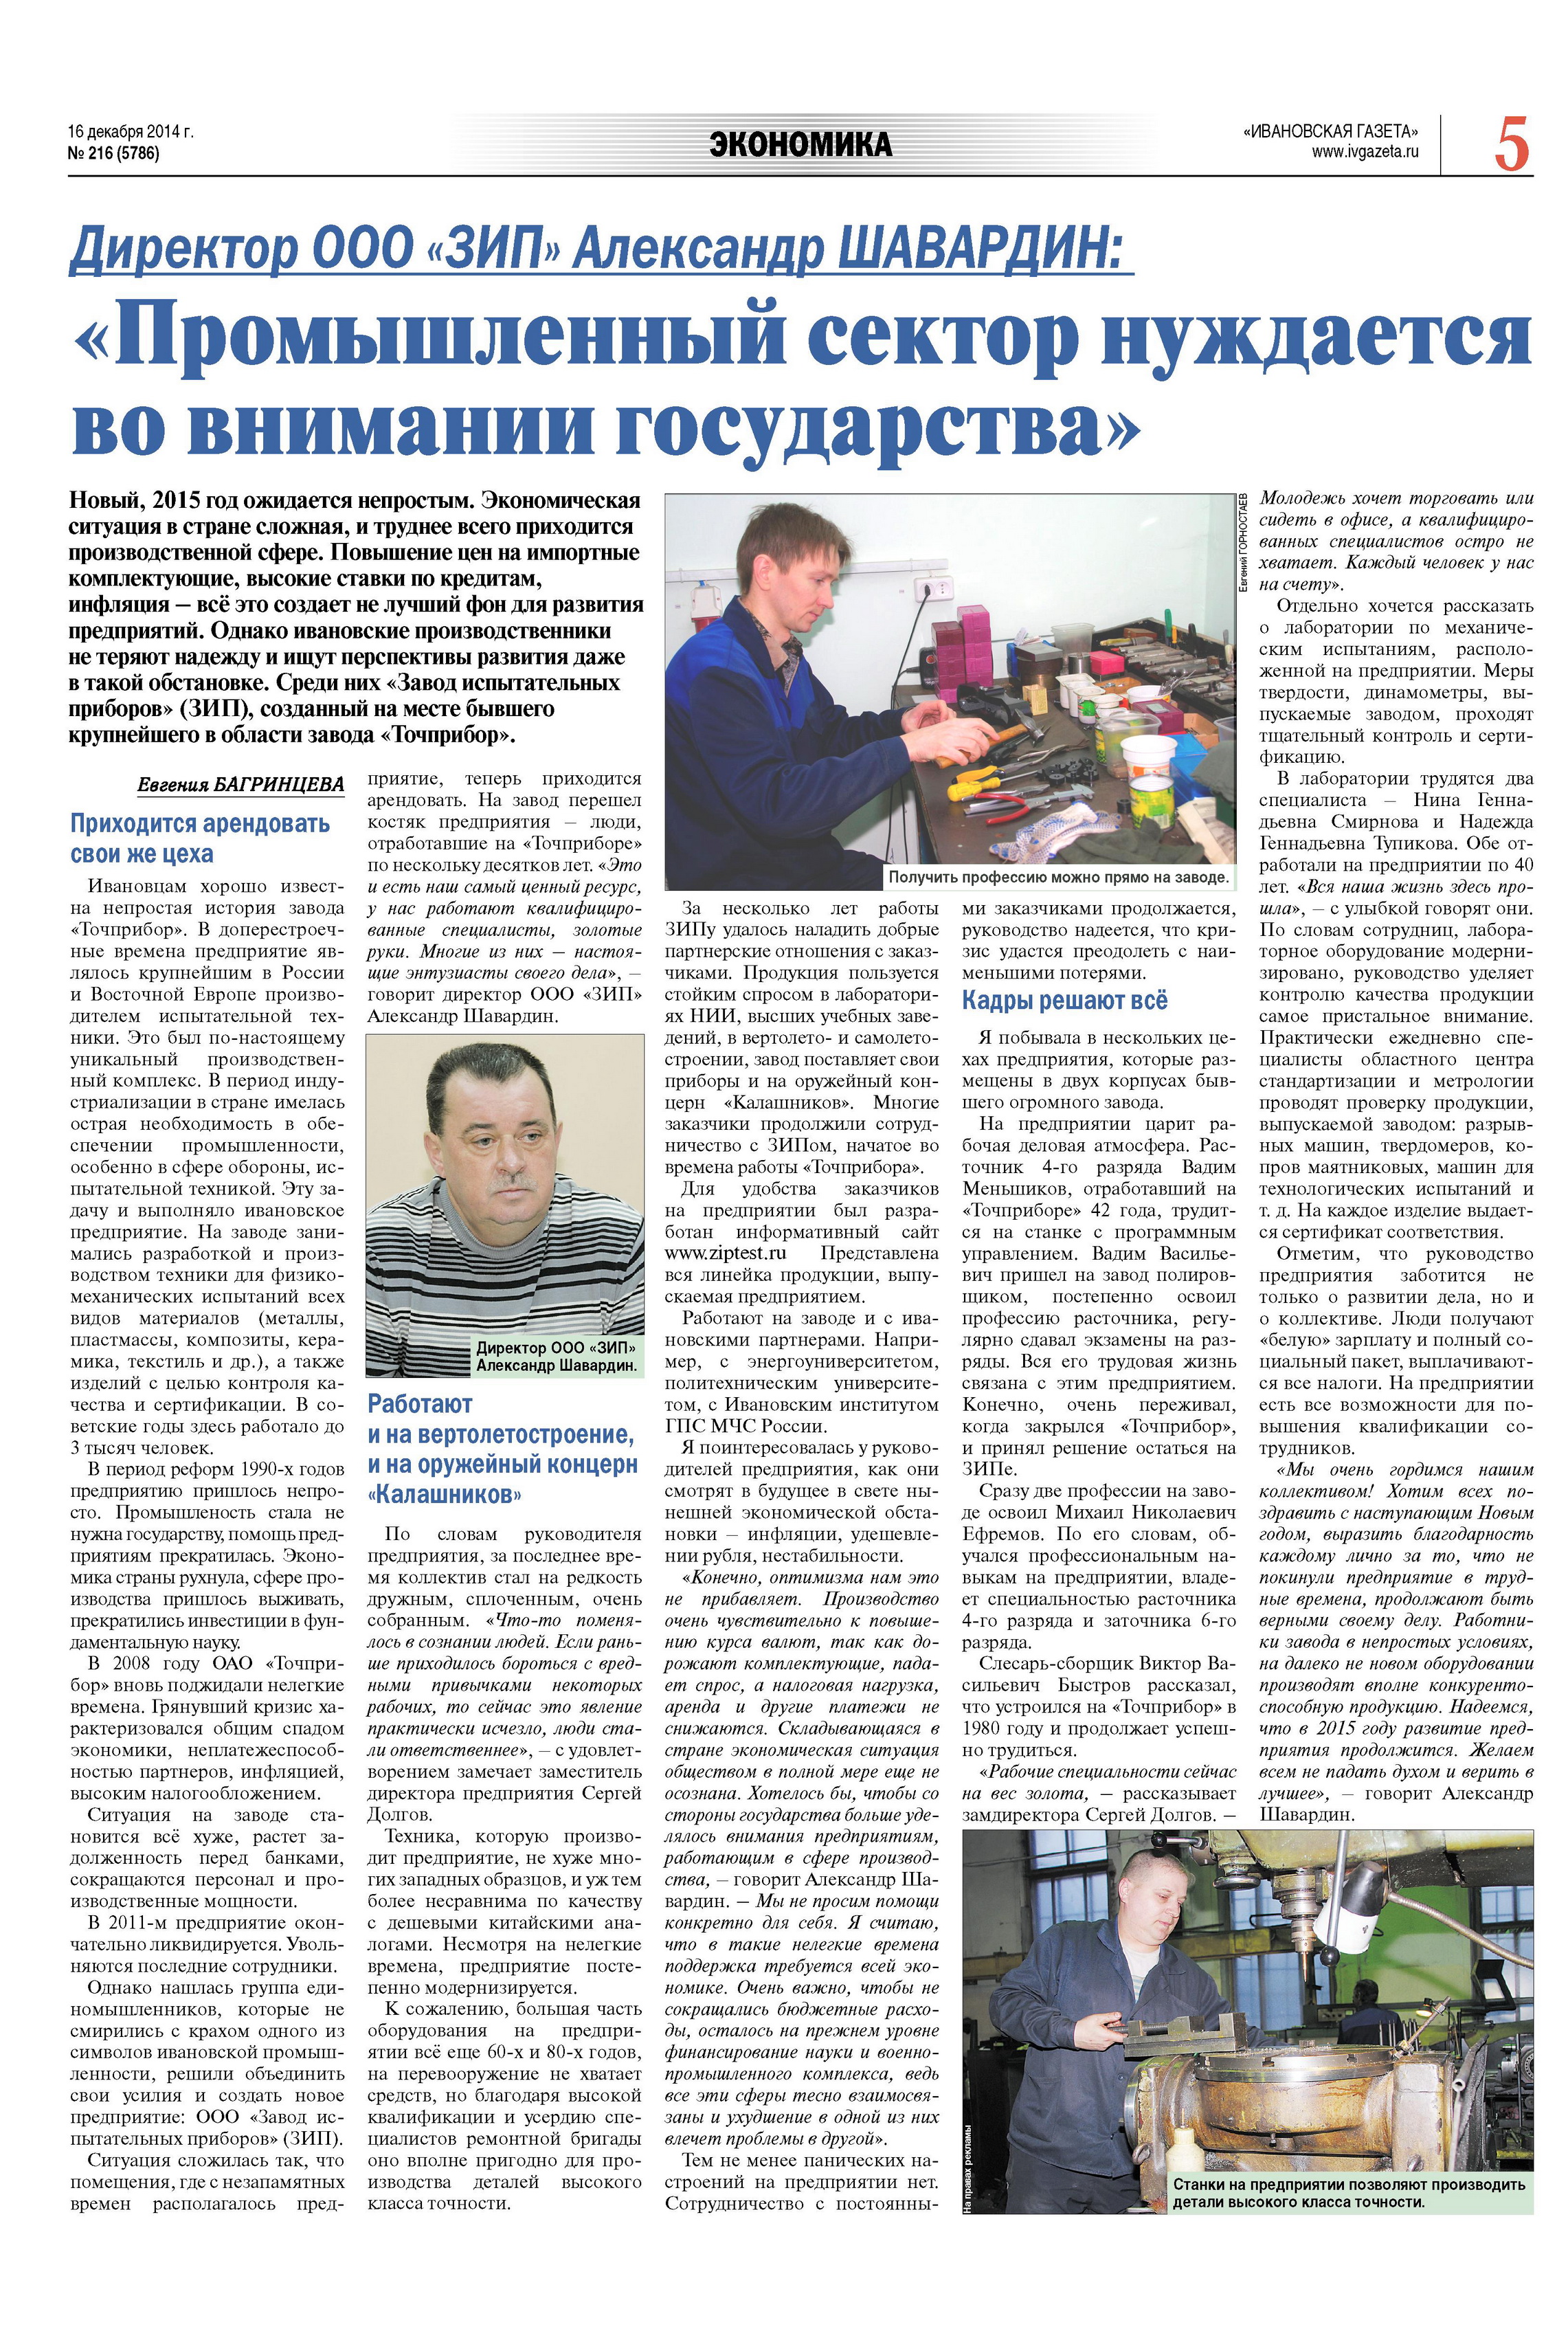 статья в "Ивановской газете"